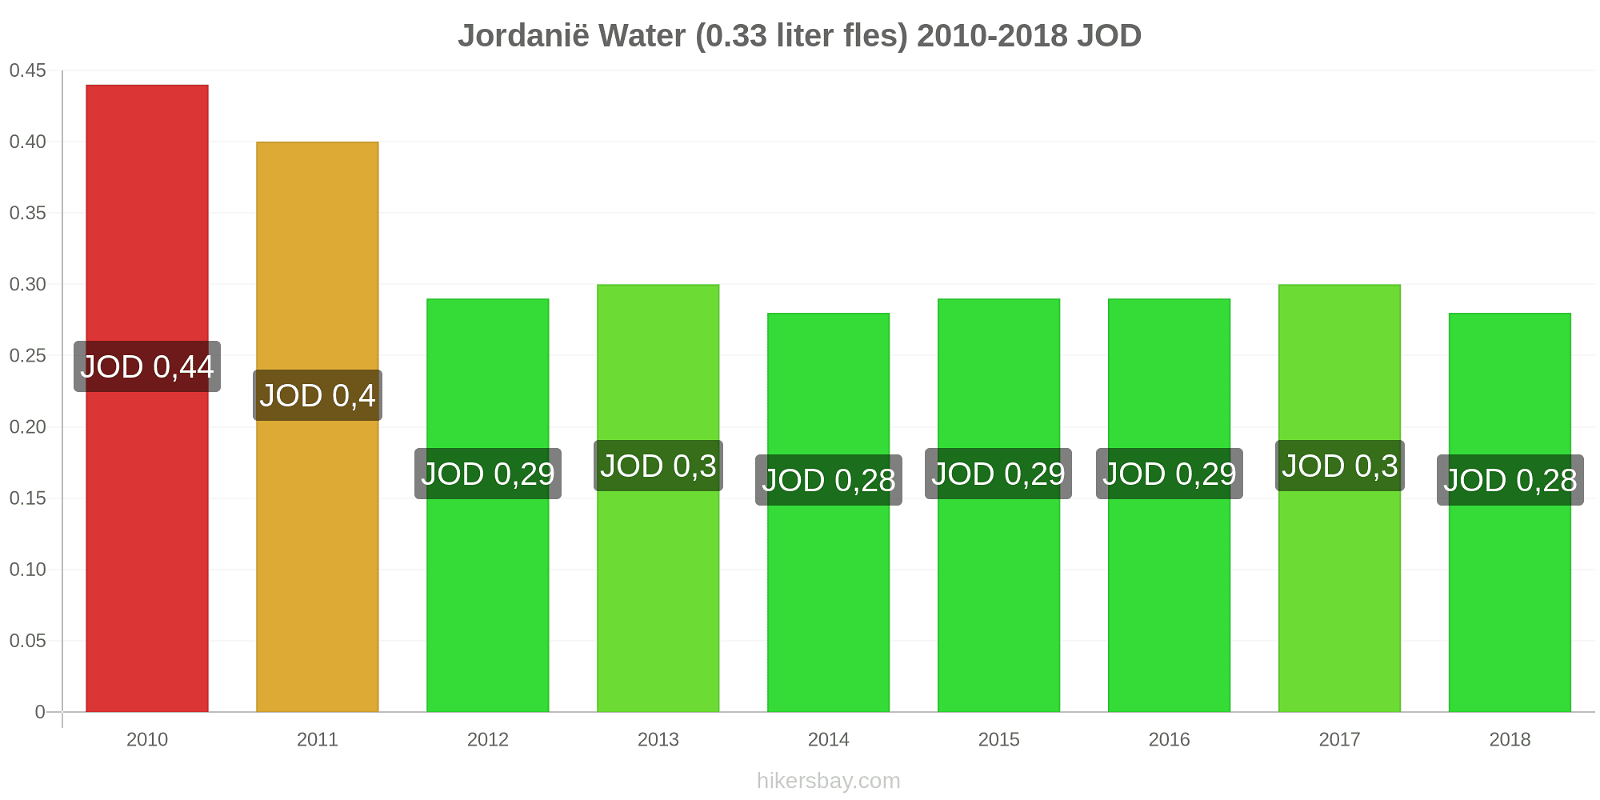 Jordanië prijswijzigingen Water (0,33 liter fles) hikersbay.com